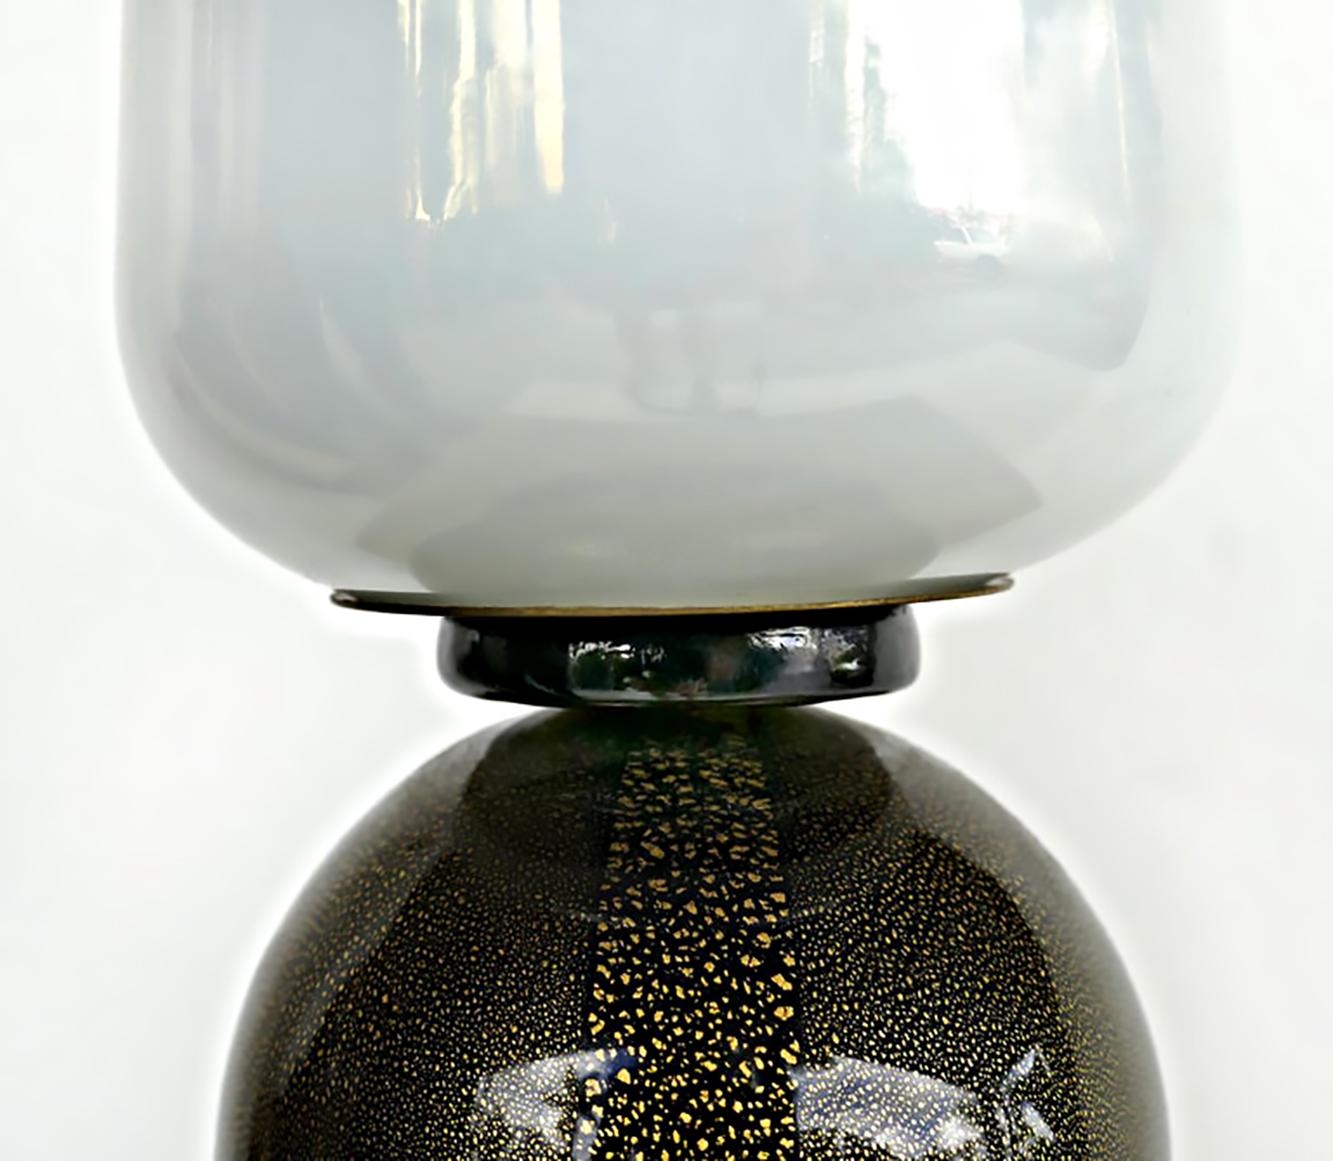 Barovier & Toso Tischlampe aus italienischem Muranoglas, 1950er Jahre.

Zum Verkauf angeboten wird eine Barovier & Toso Glastischlampe aus den 1950er Jahren. Die Lampe ist für amerikanische Steckdosen verdrahtet und verfügt über einen